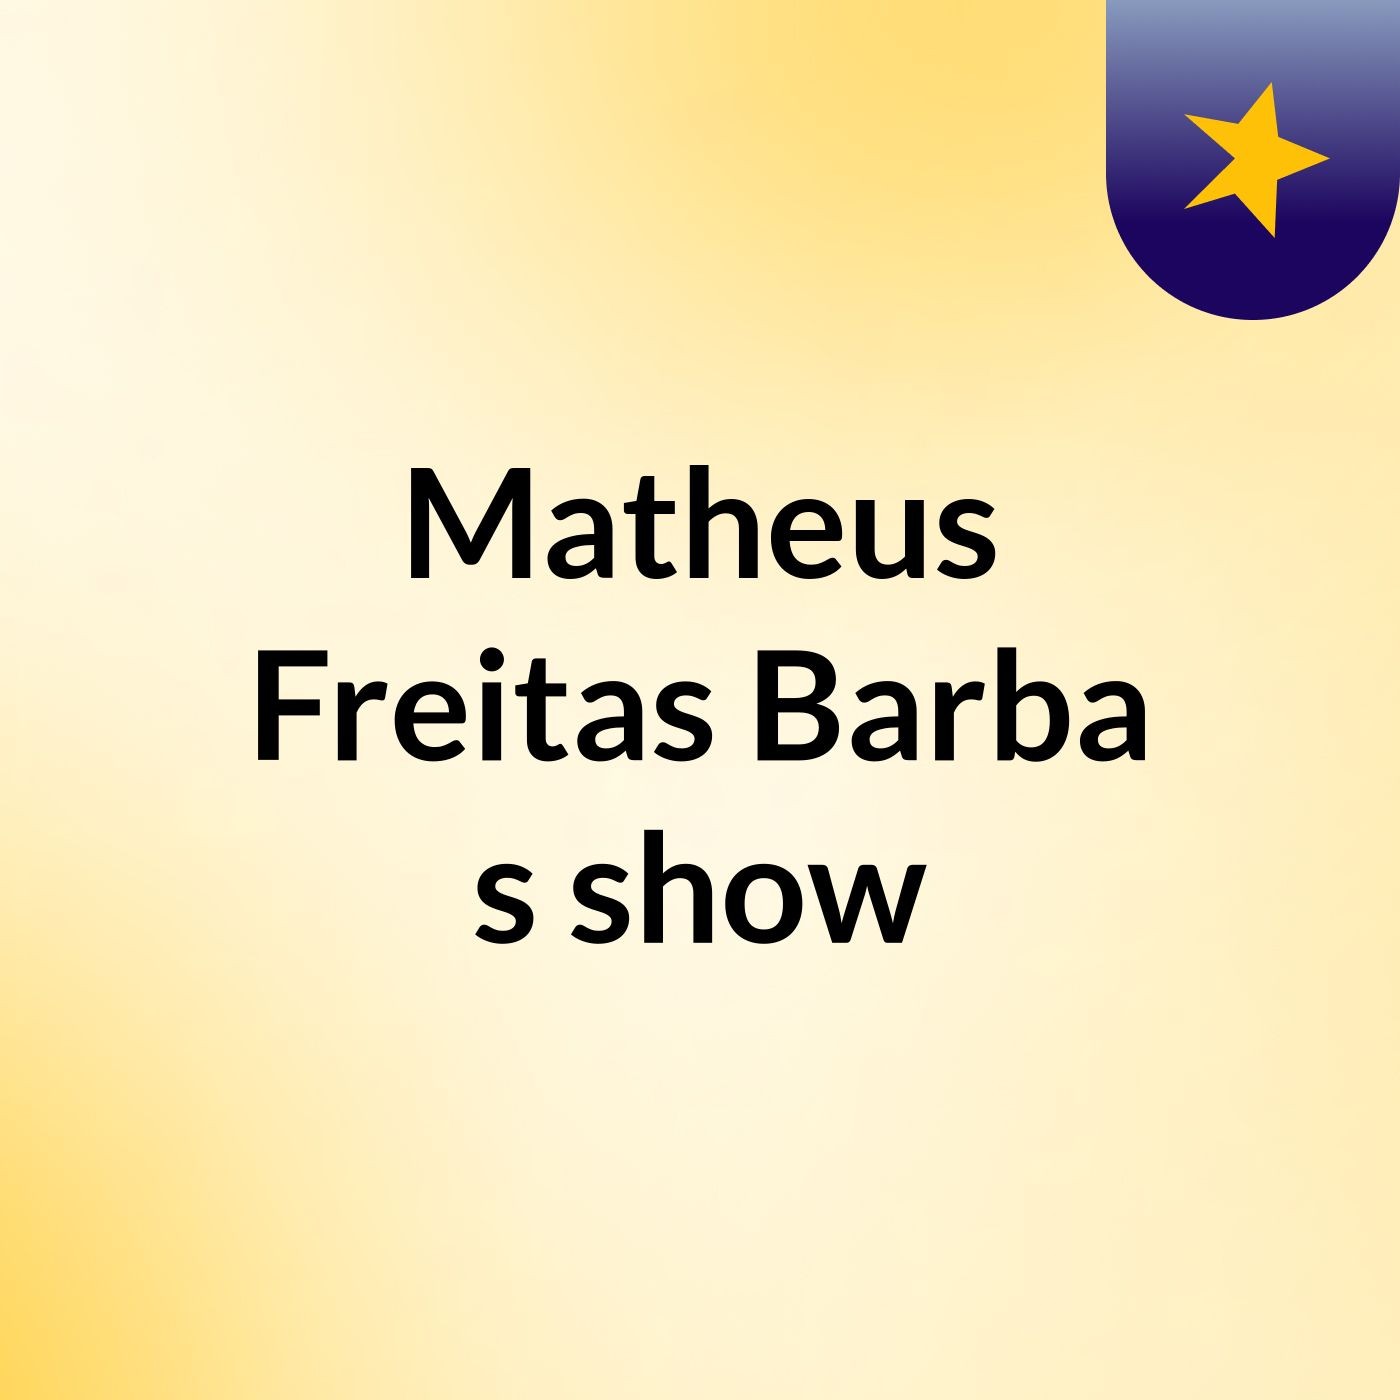 Matheus Freitas Barba's show